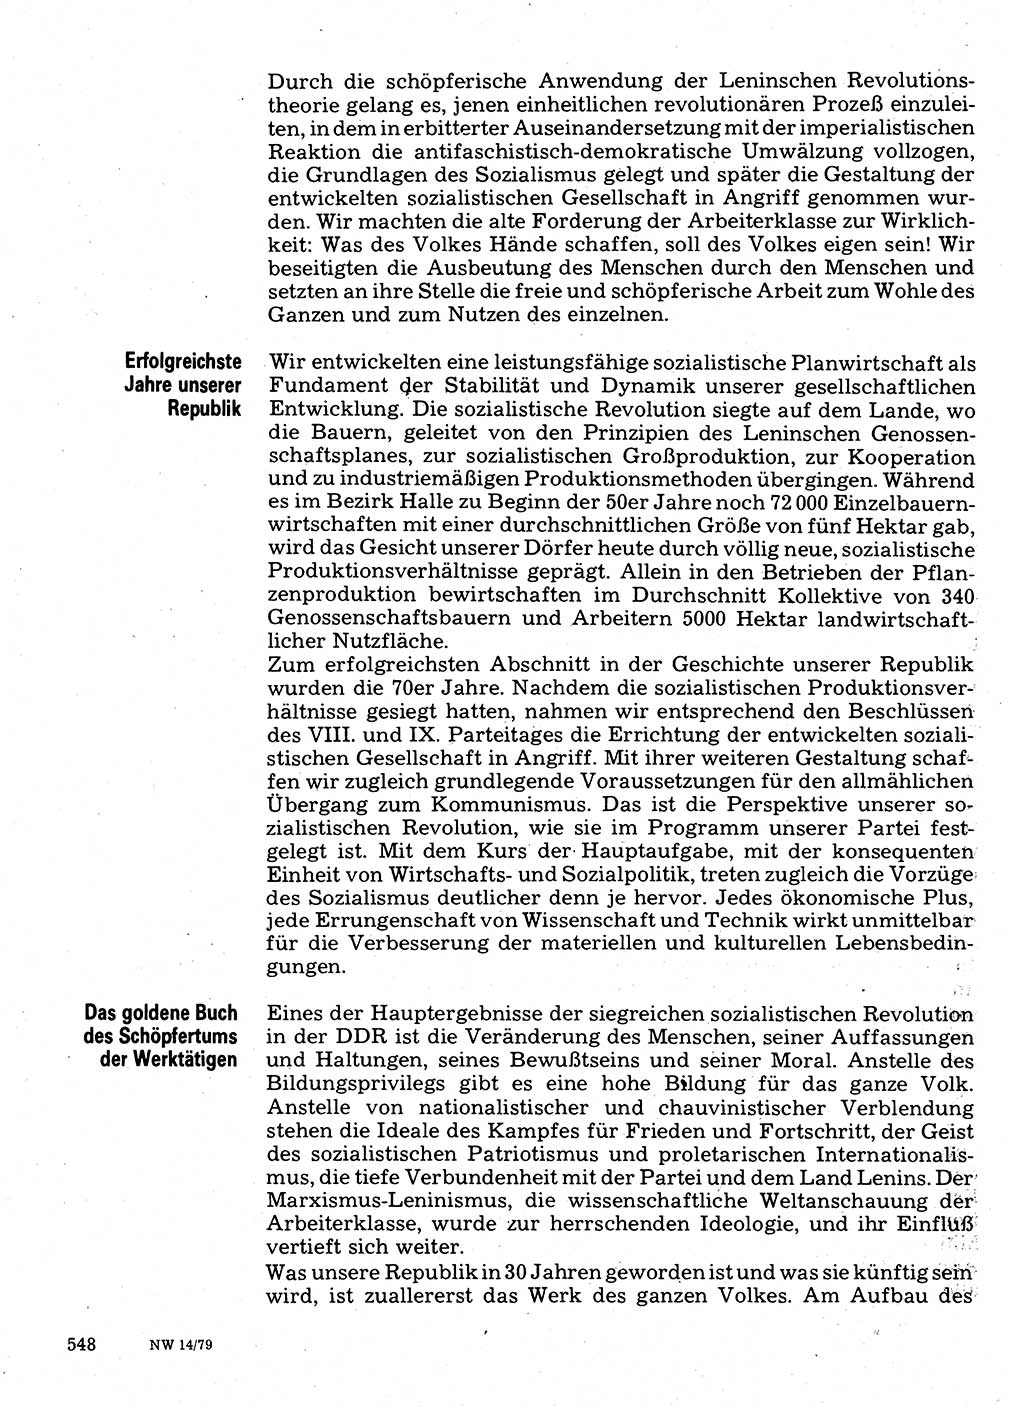 Neuer Weg (NW), Organ des Zentralkomitees (ZK) der SED (Sozialistische Einheitspartei Deutschlands) für Fragen des Parteilebens, 34. Jahrgang [Deutsche Demokratische Republik (DDR)] 1979, Seite 548 (NW ZK SED DDR 1979, S. 548)